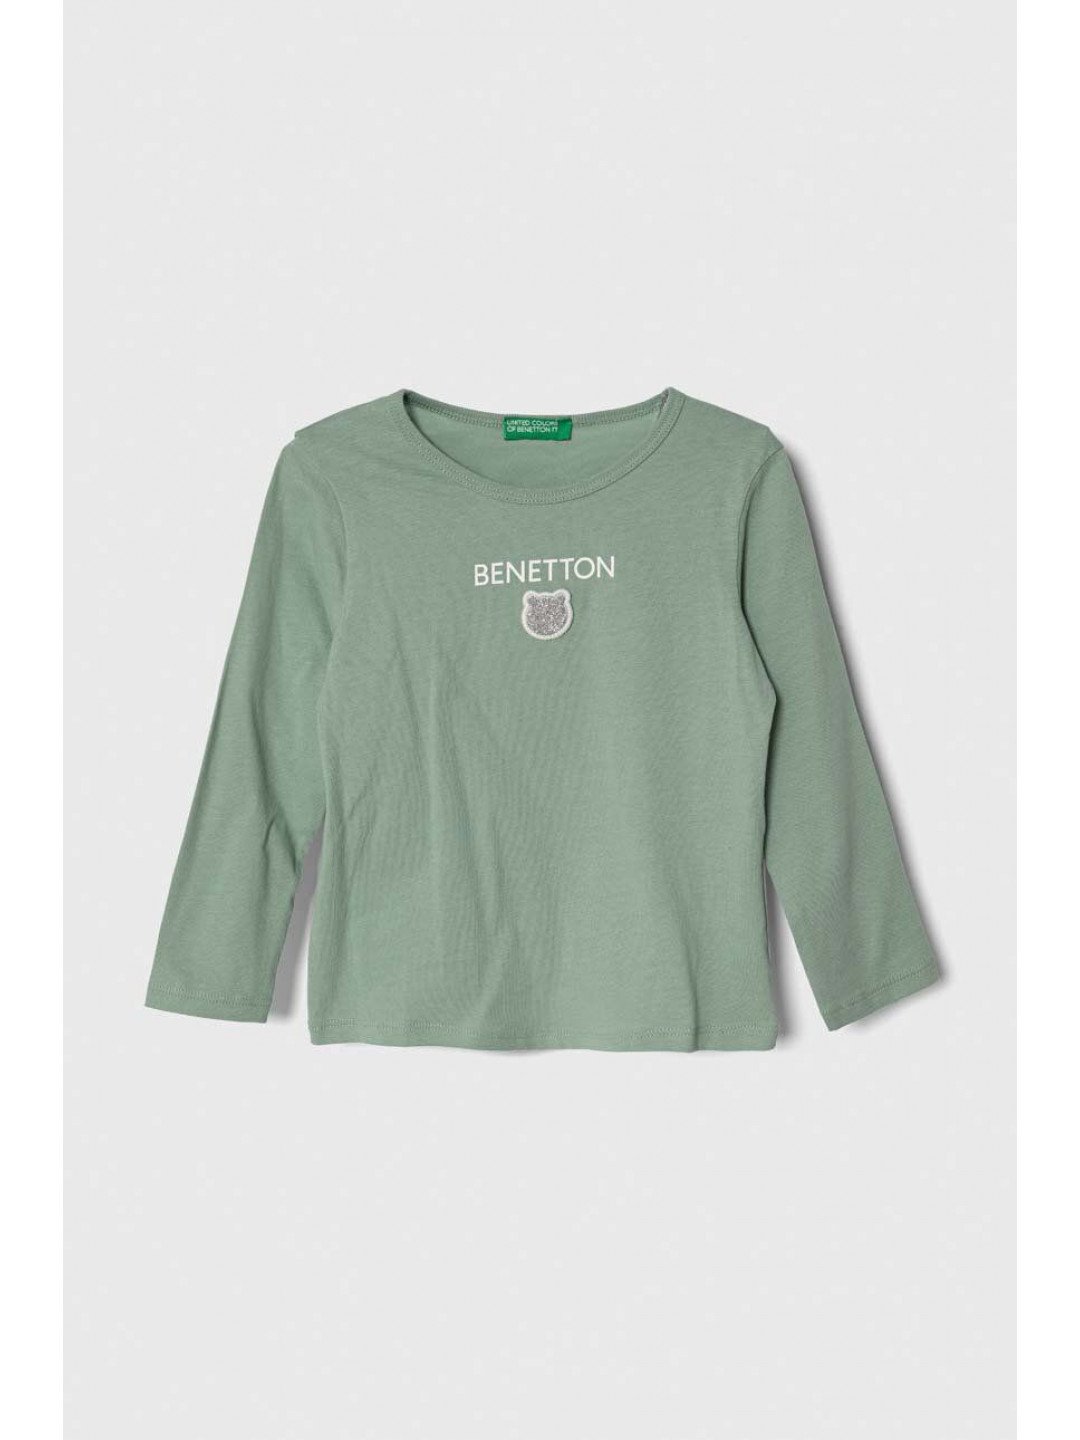 Dětské bavlněné tričko s dlouhým rukávem United Colors of Benetton zelená barva s potiskem